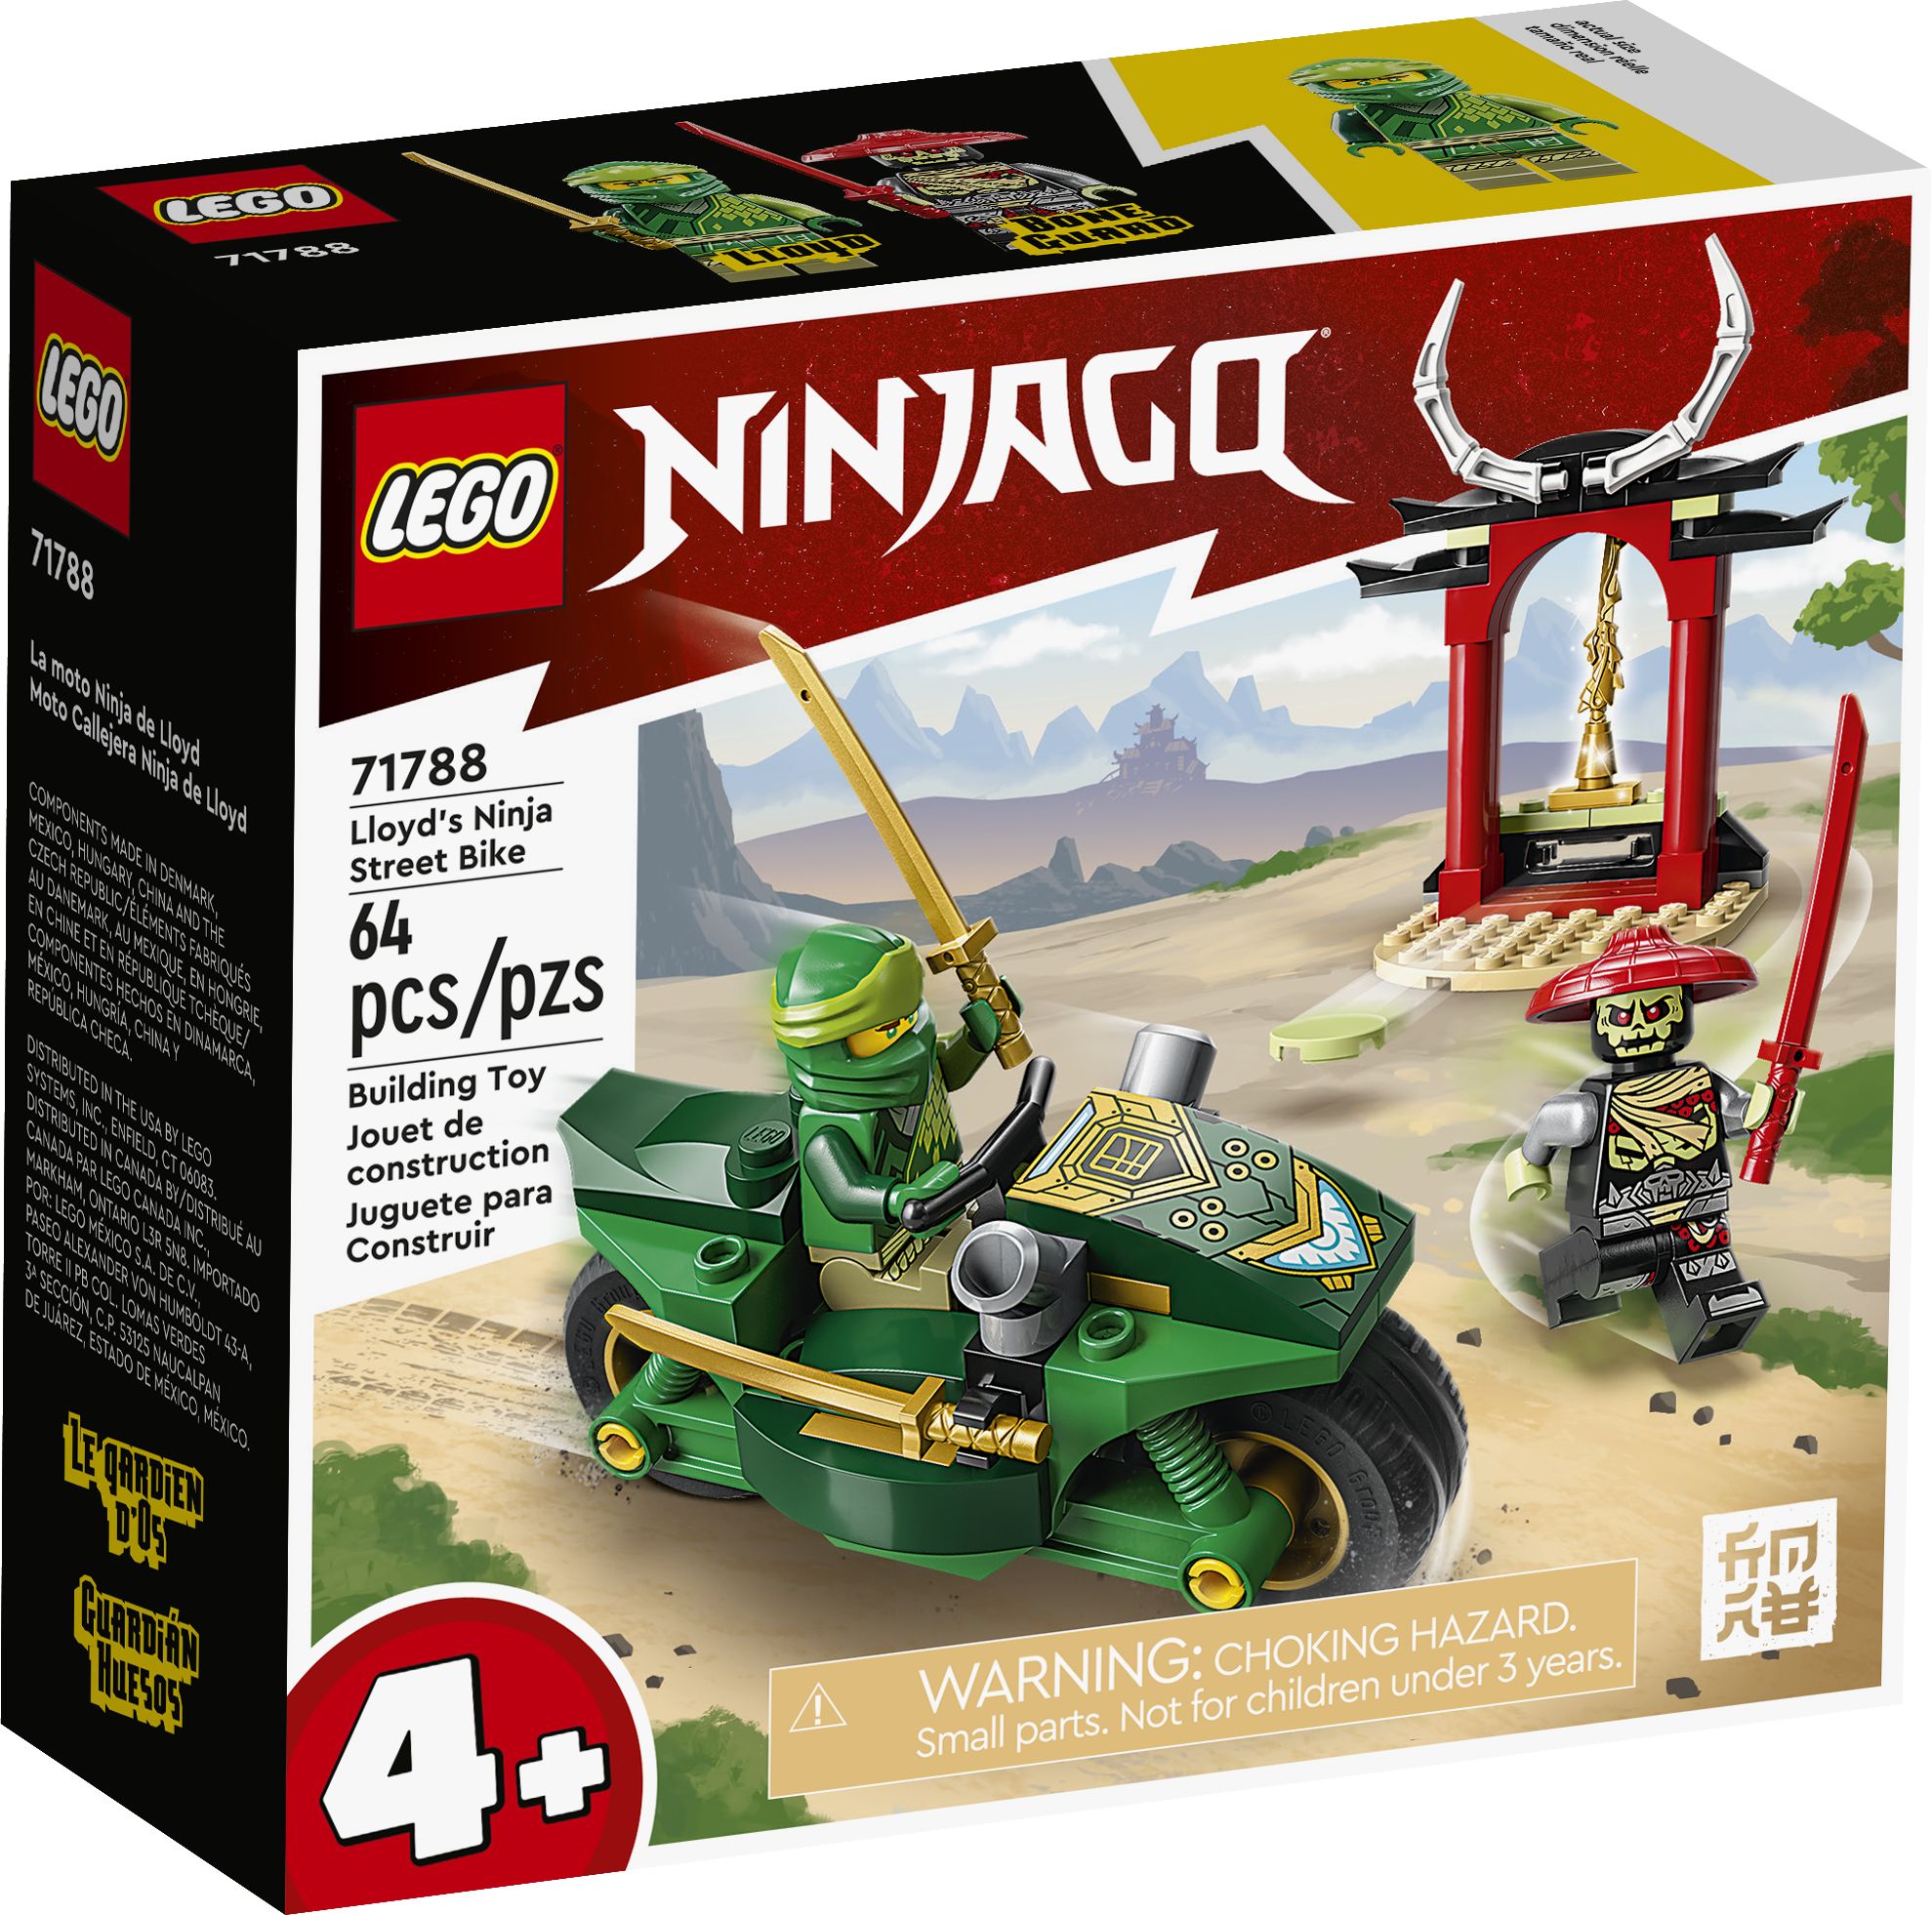 LEGO Ninjago 71788 Lloyds Ninja-Motorrad LEGO_71788_Box1_v39.jpg